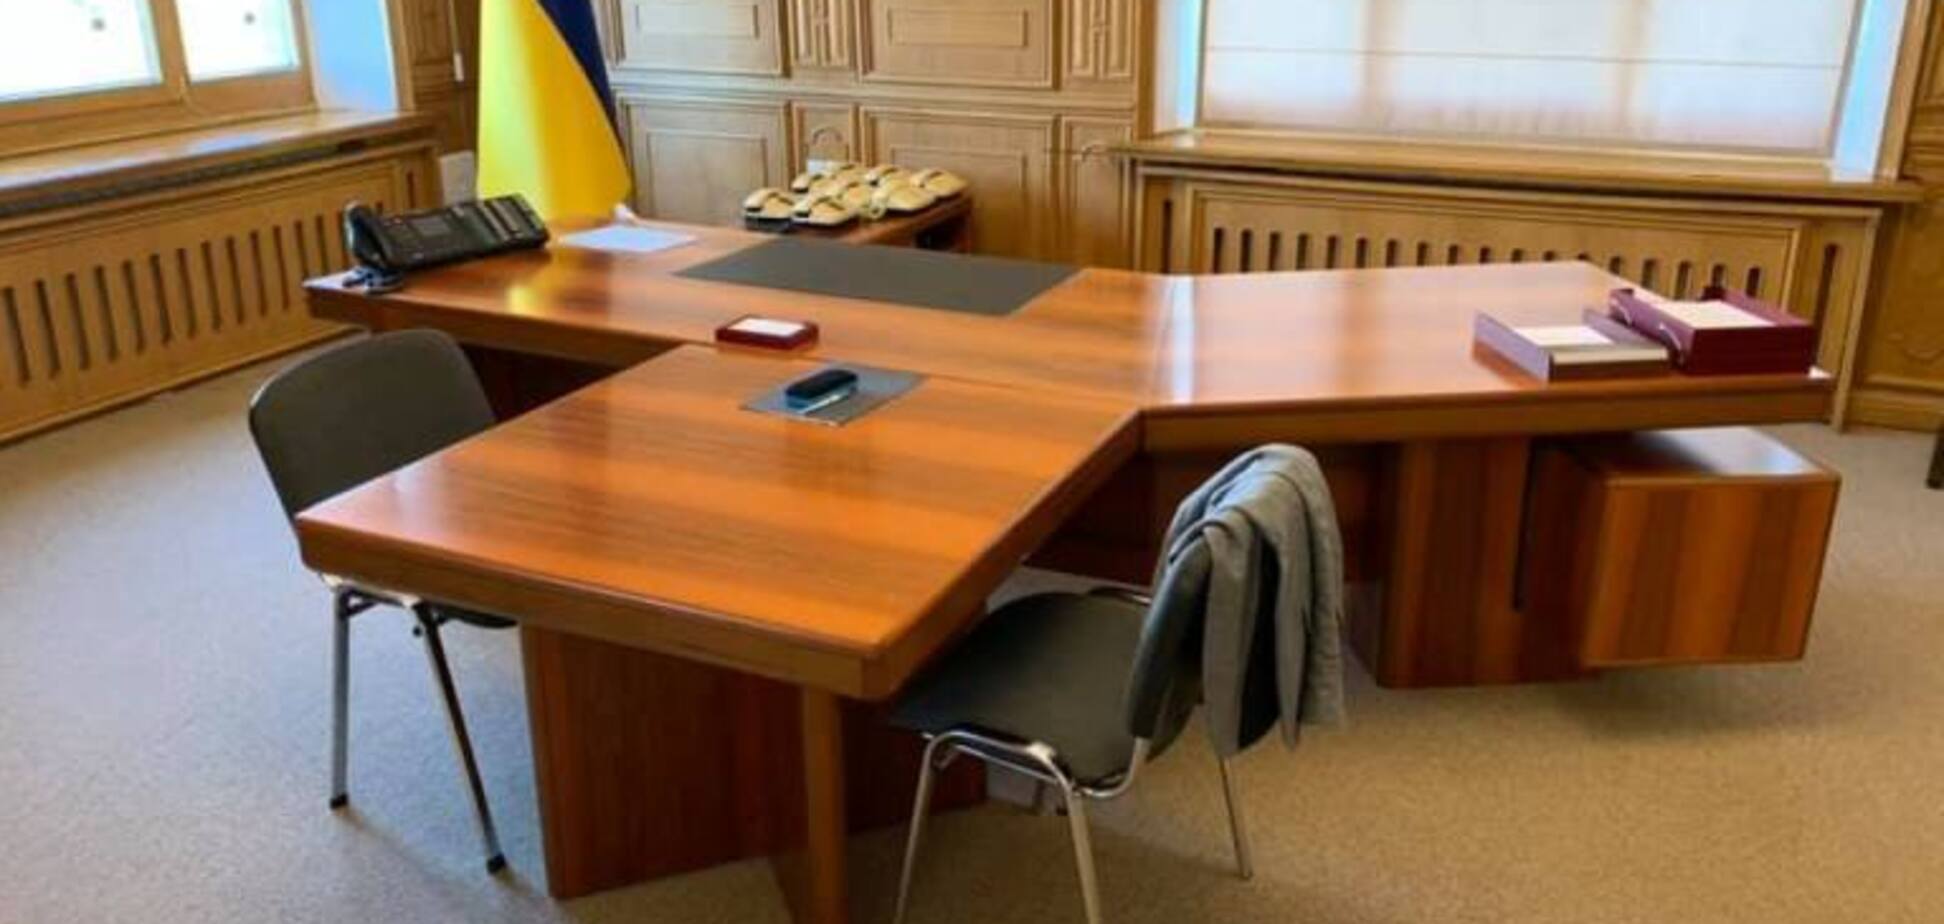 Бумага must die: в Кабинете министров Украины начали избавляться от бумажного документооборота